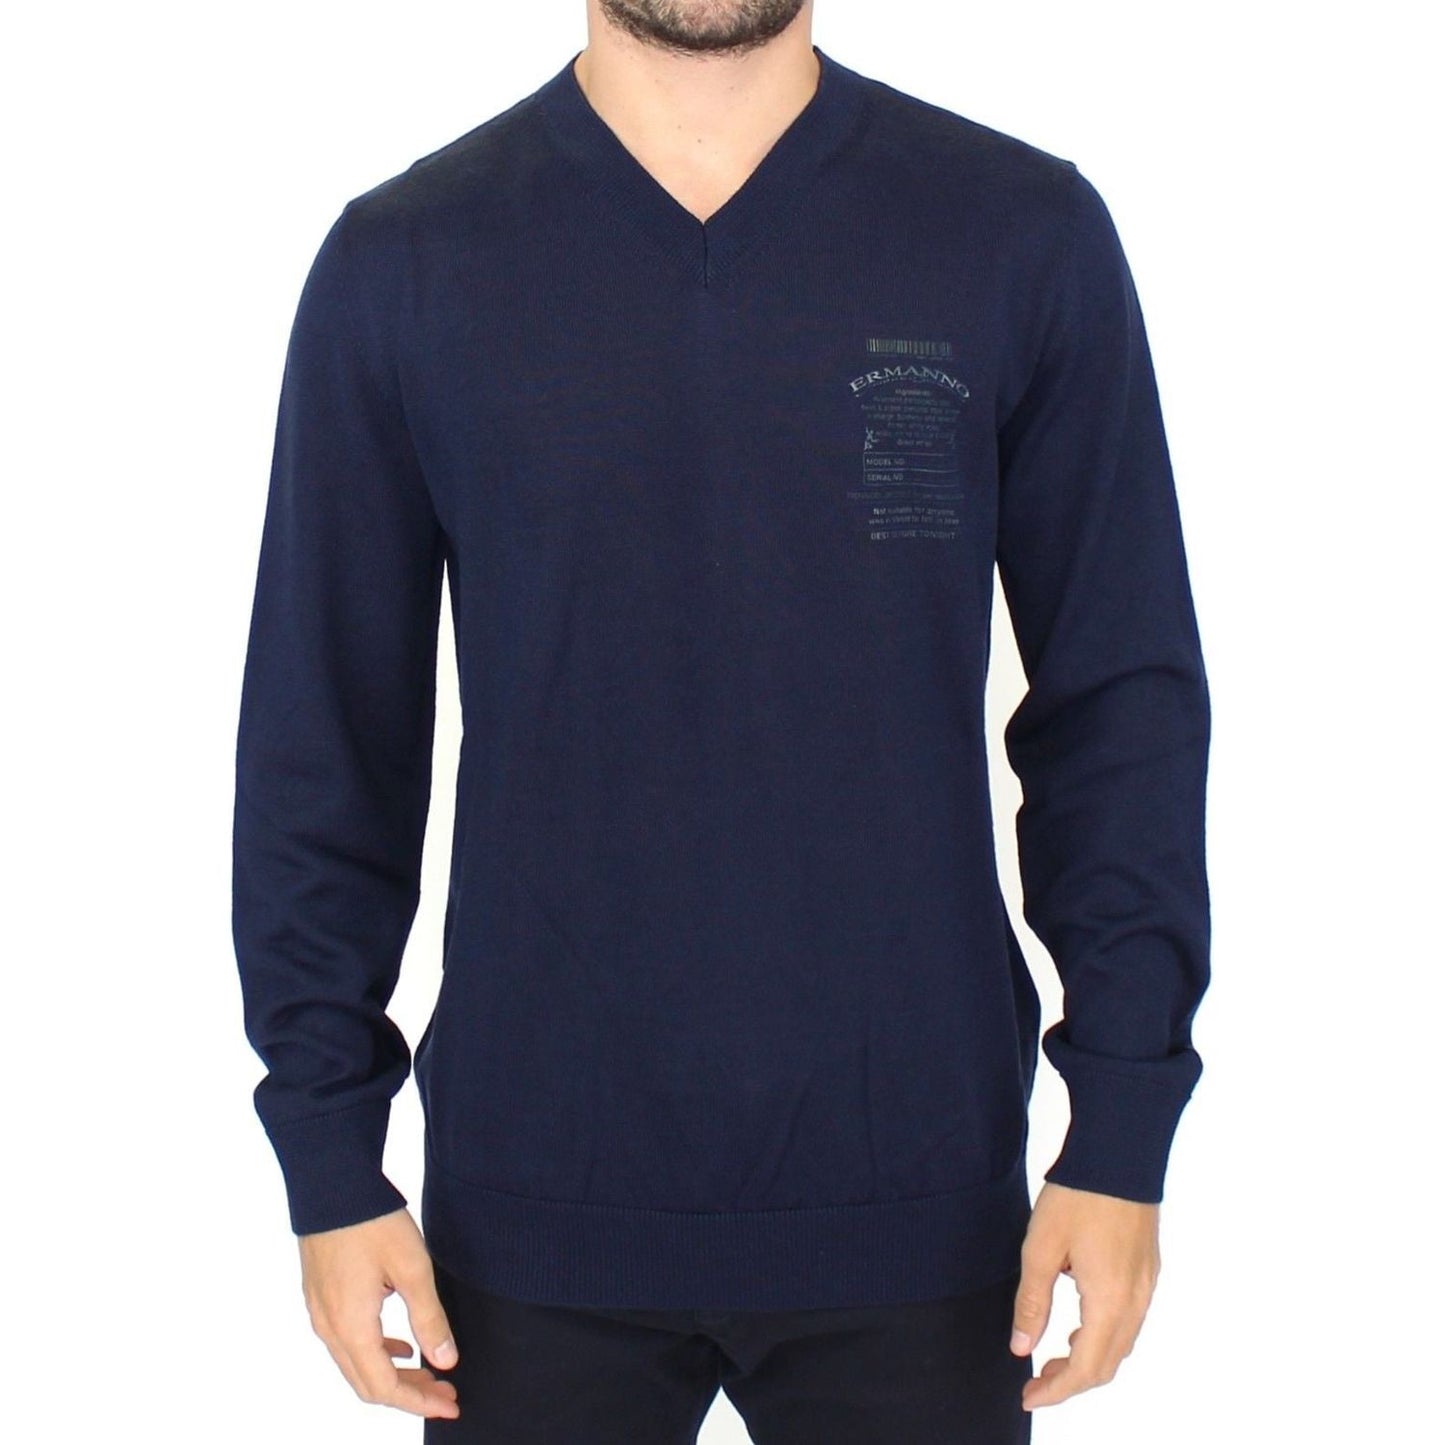 Ermanno Scervino Elegant Blue V-Neck Wool Blend Pullover blue-wool-blend-v-neck-pullover-sweater 37438-blue-wool-blend-v-neck-pullover-sweater.jpg